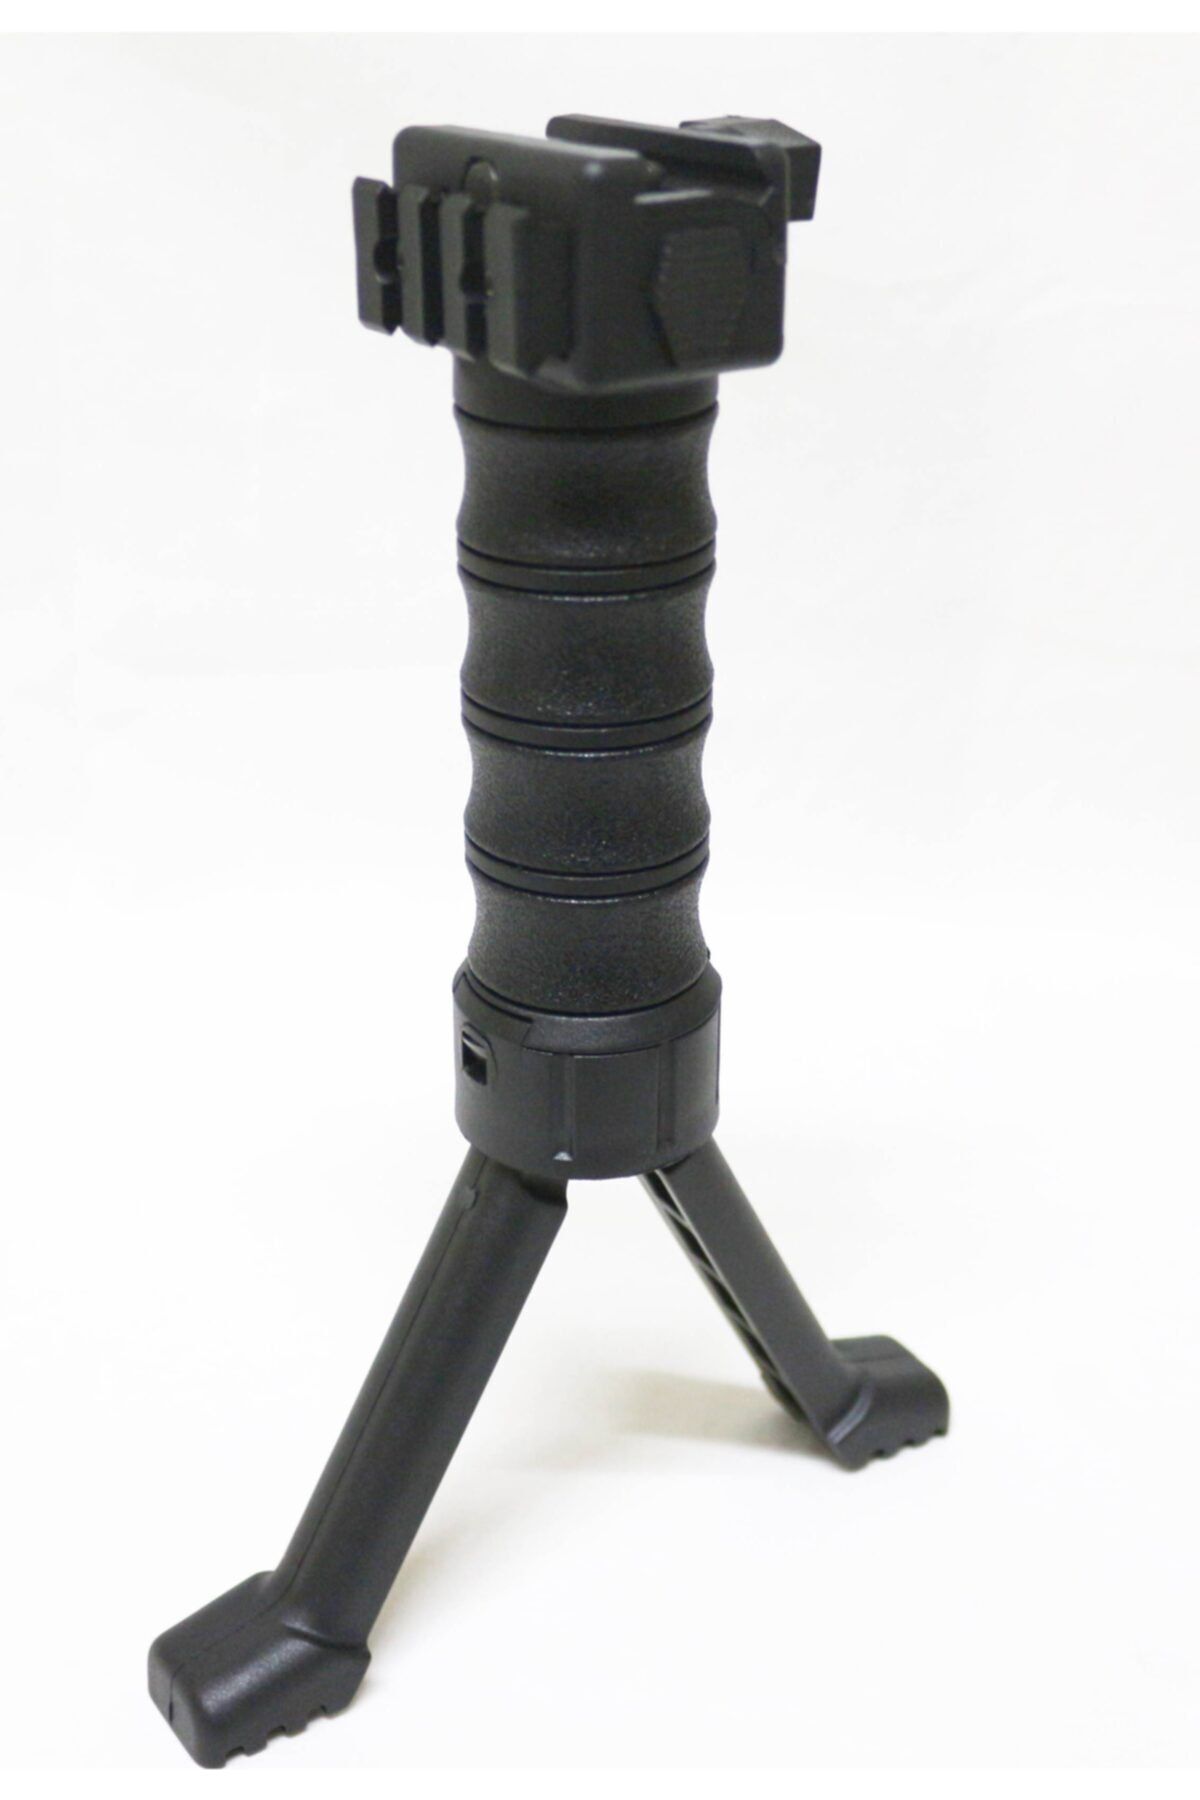 CAPRA ARMS Beyoutdoor Plastik Çatal Ayak Teleskopik Tüfek